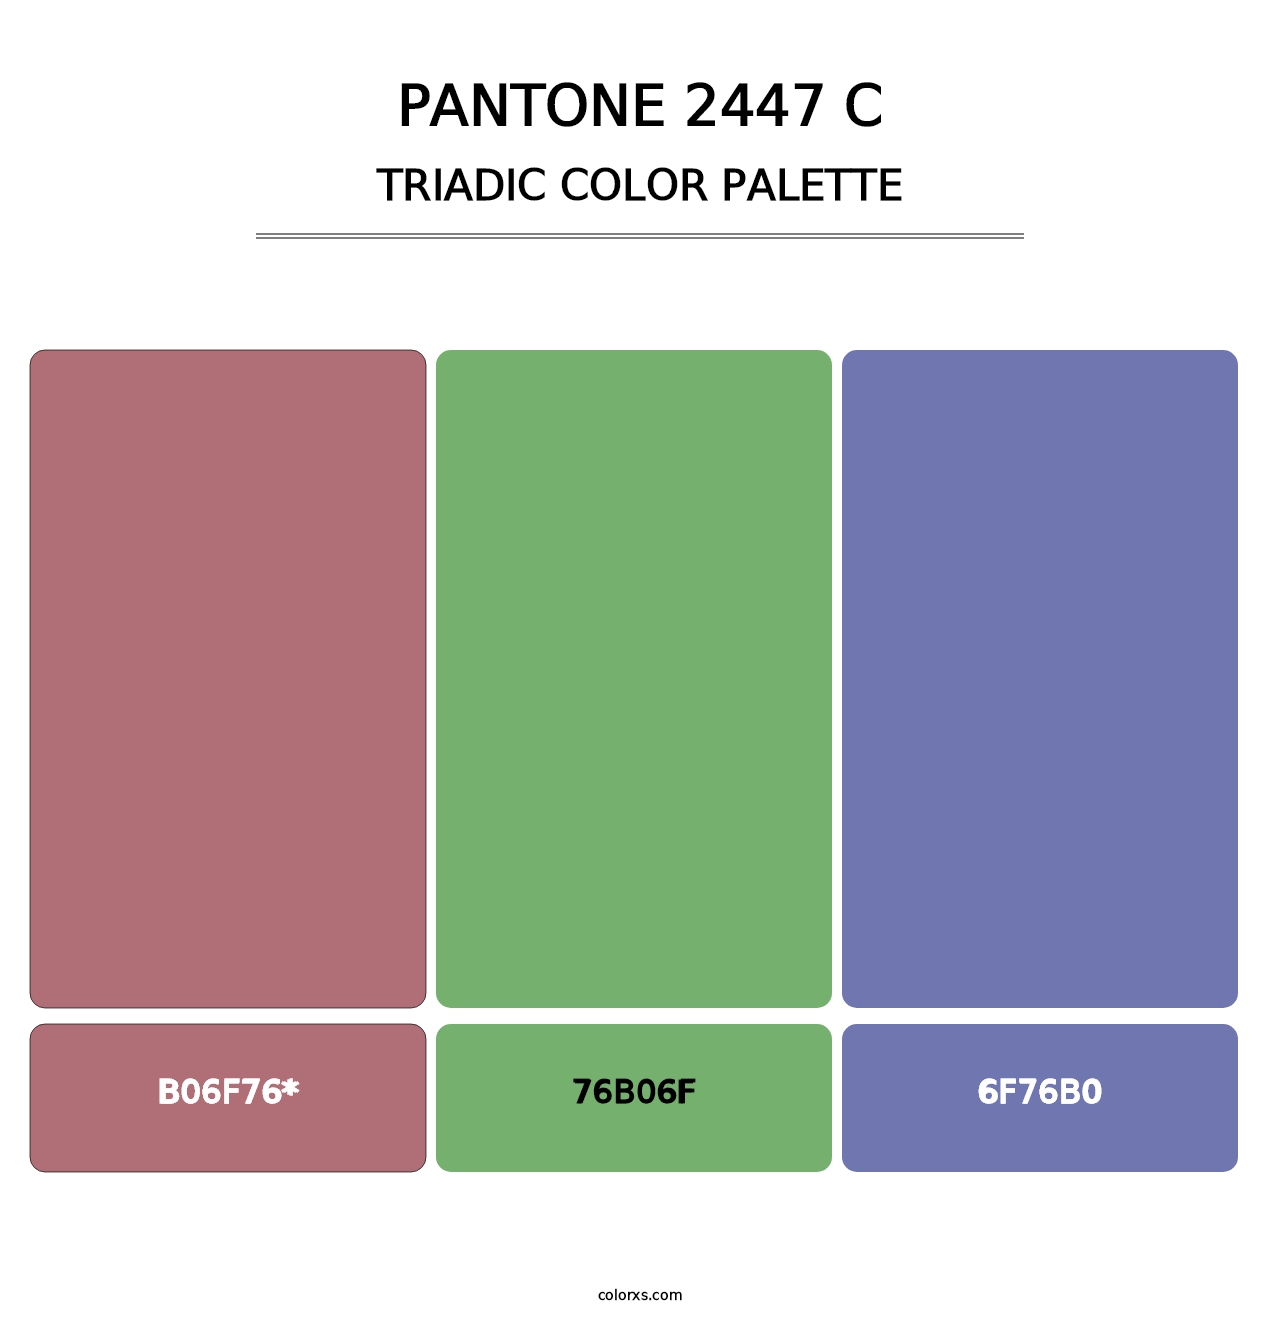 PANTONE 2447 C - Triadic Color Palette